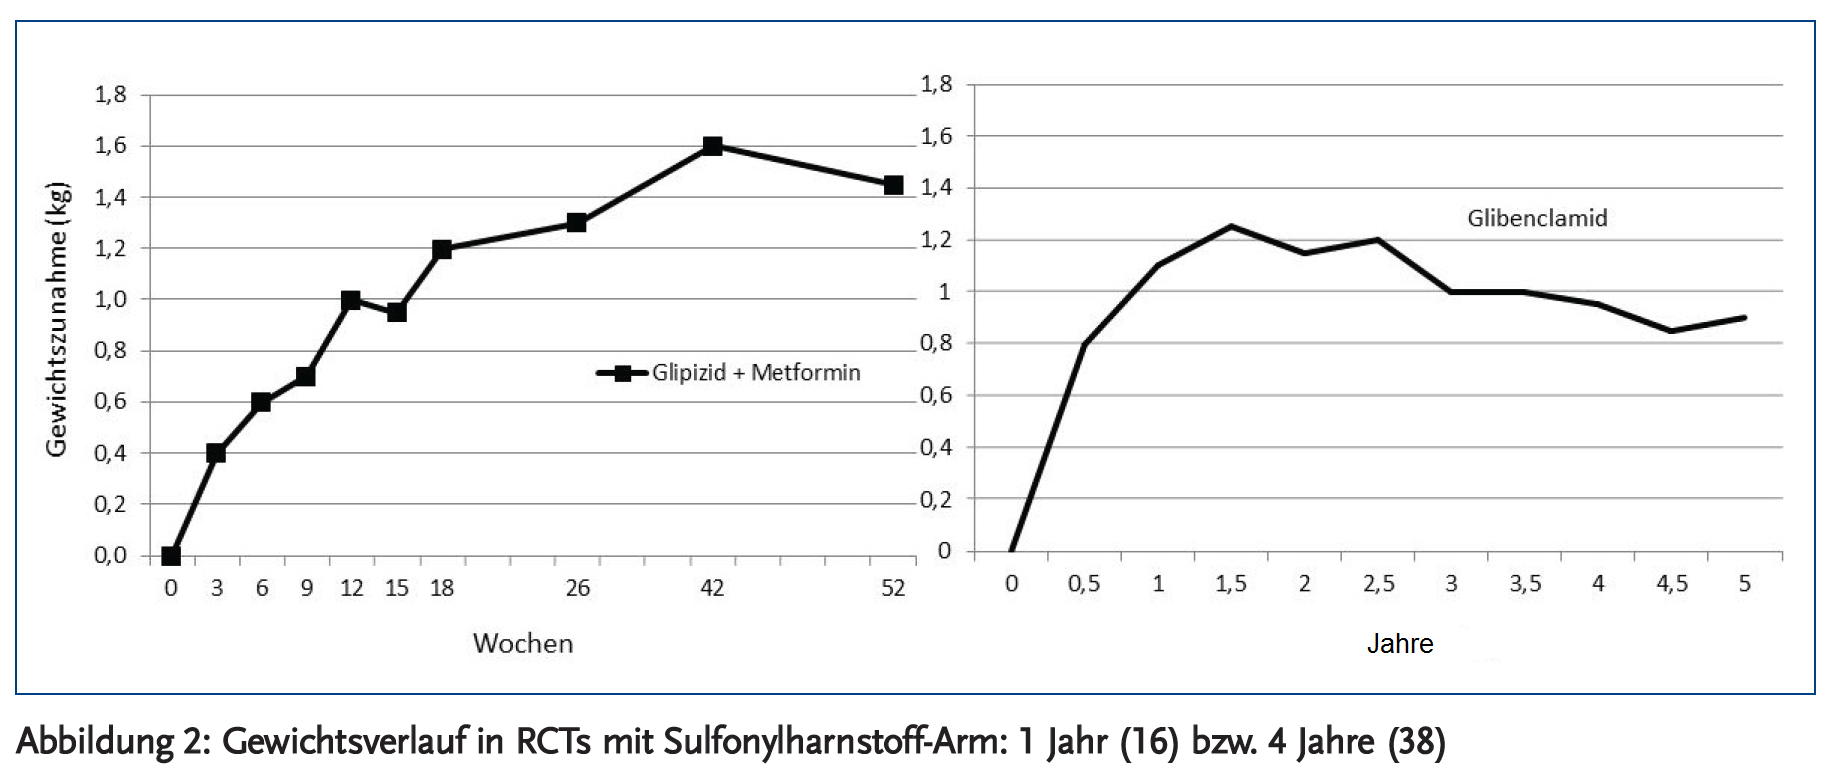 Abbildung 2: Gewichtsverlauf in RCT’s mit Sulfonylharnstoff-Arm: 1 Jahr (16) bzw. 4 Jahre (38).